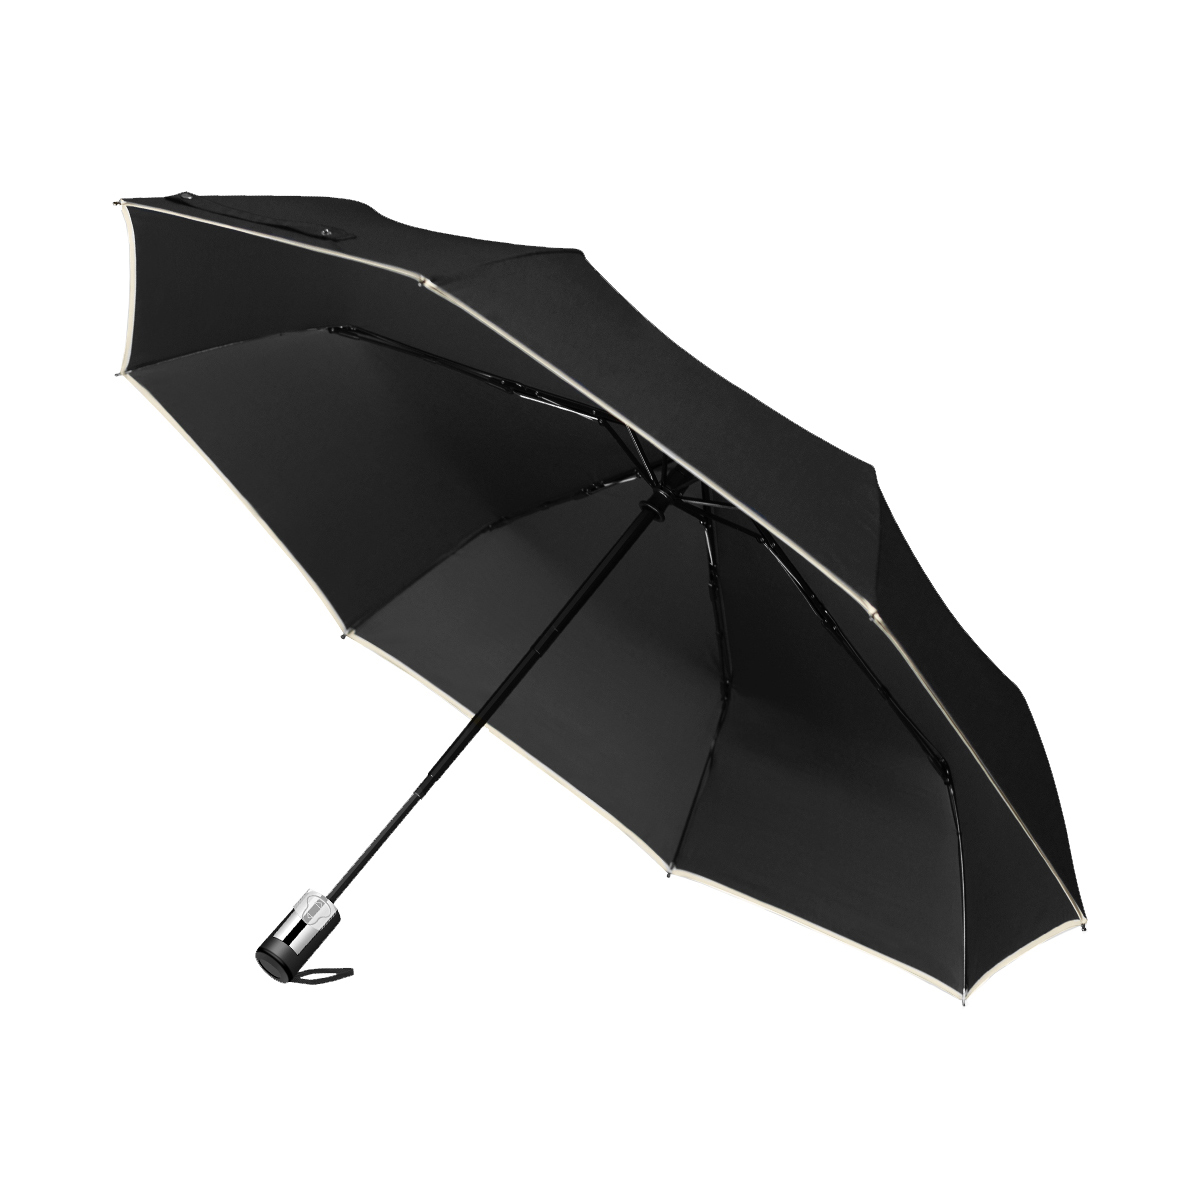 折りたたみ傘 自動開閉 雨傘 大きい 5級撥水 メンズ レディース 日本特許逆戻り防止 梅雨対策 折り畳み傘 軽量 晴雨兼用 おしゃれ ギフト